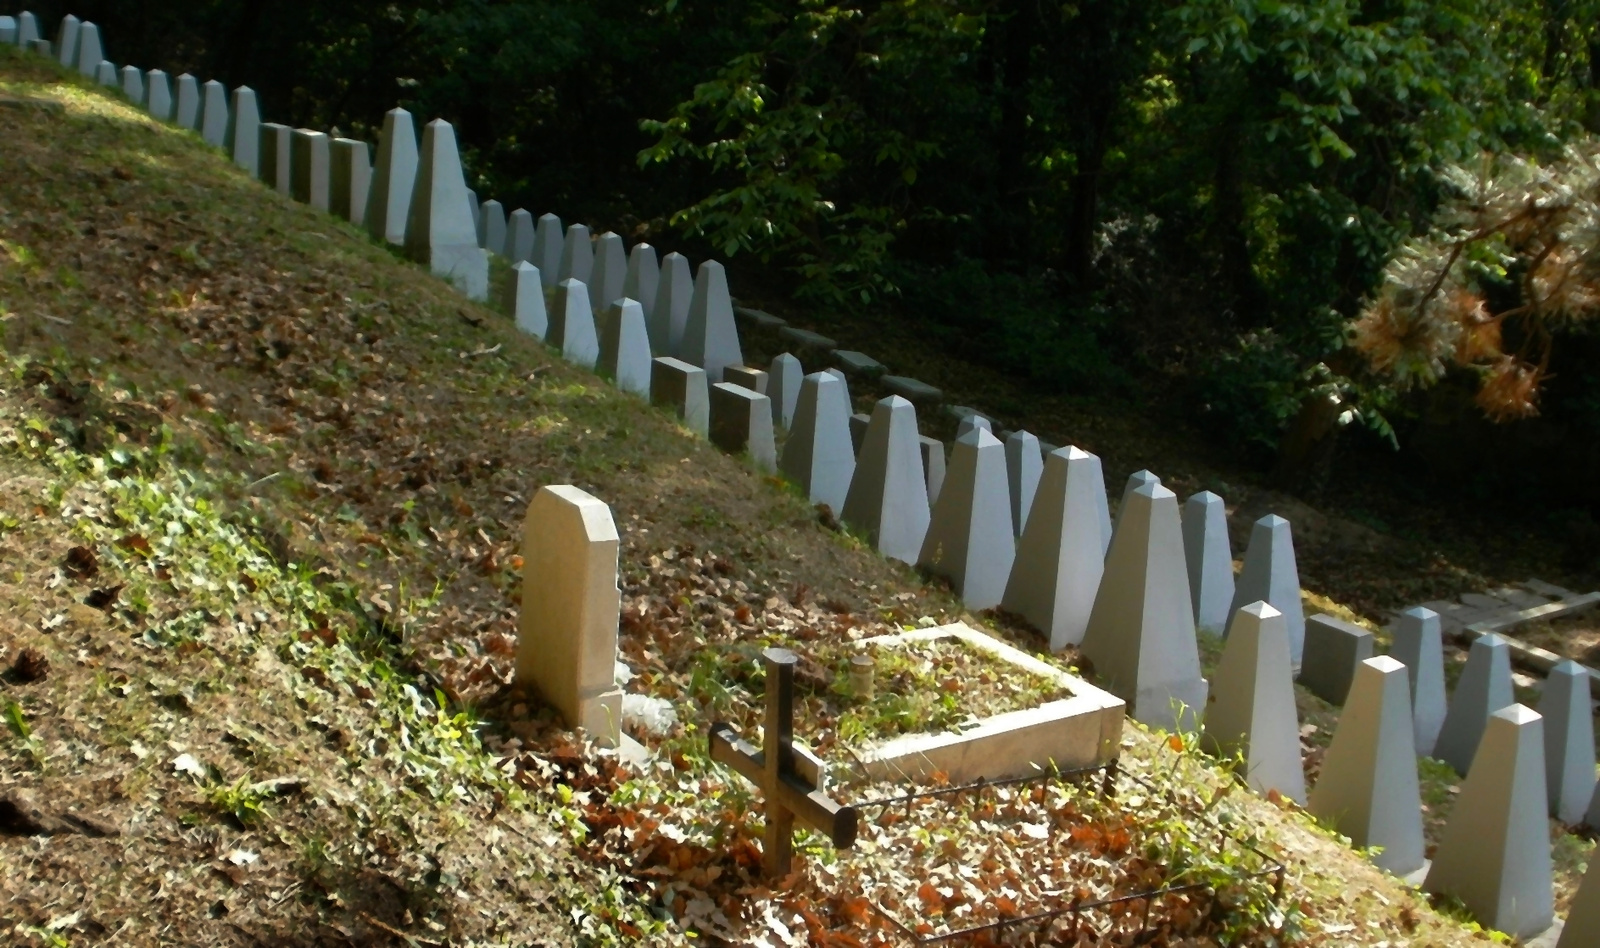 11. Hősi temető